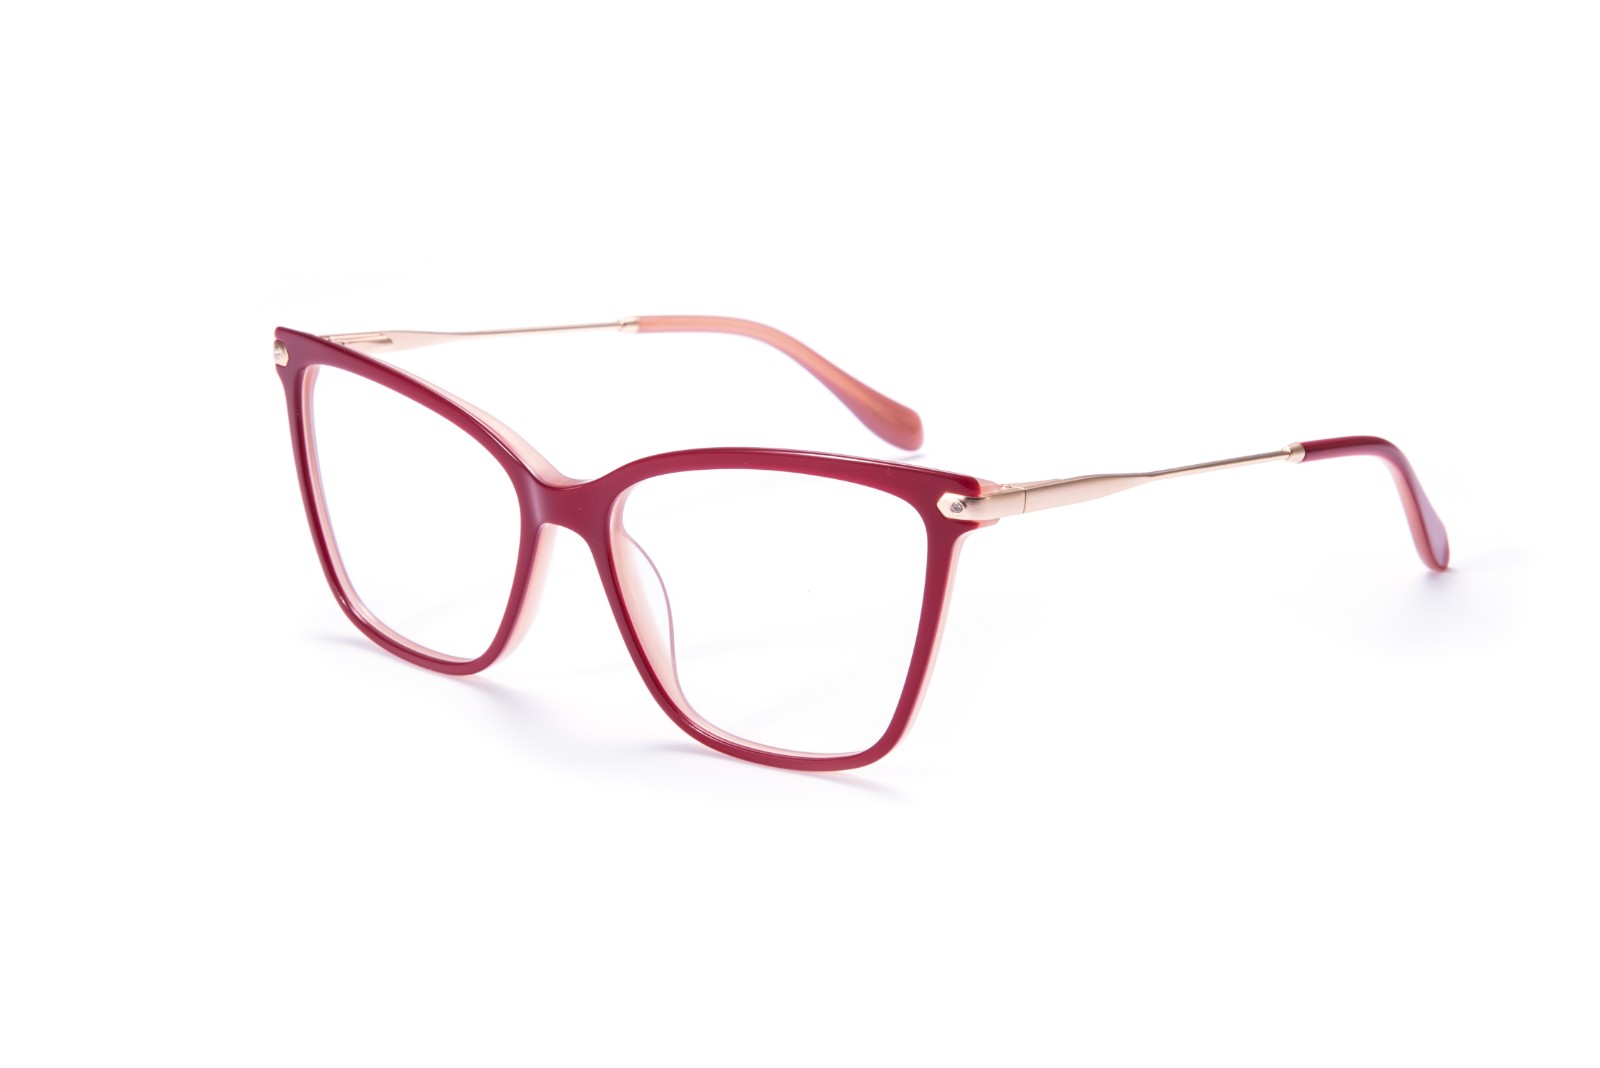 (RTS) EA1101 Acetate optical frame 2021 wholesale glasses frames optical acetate optical frames ready to ship optical frames eyeglasses